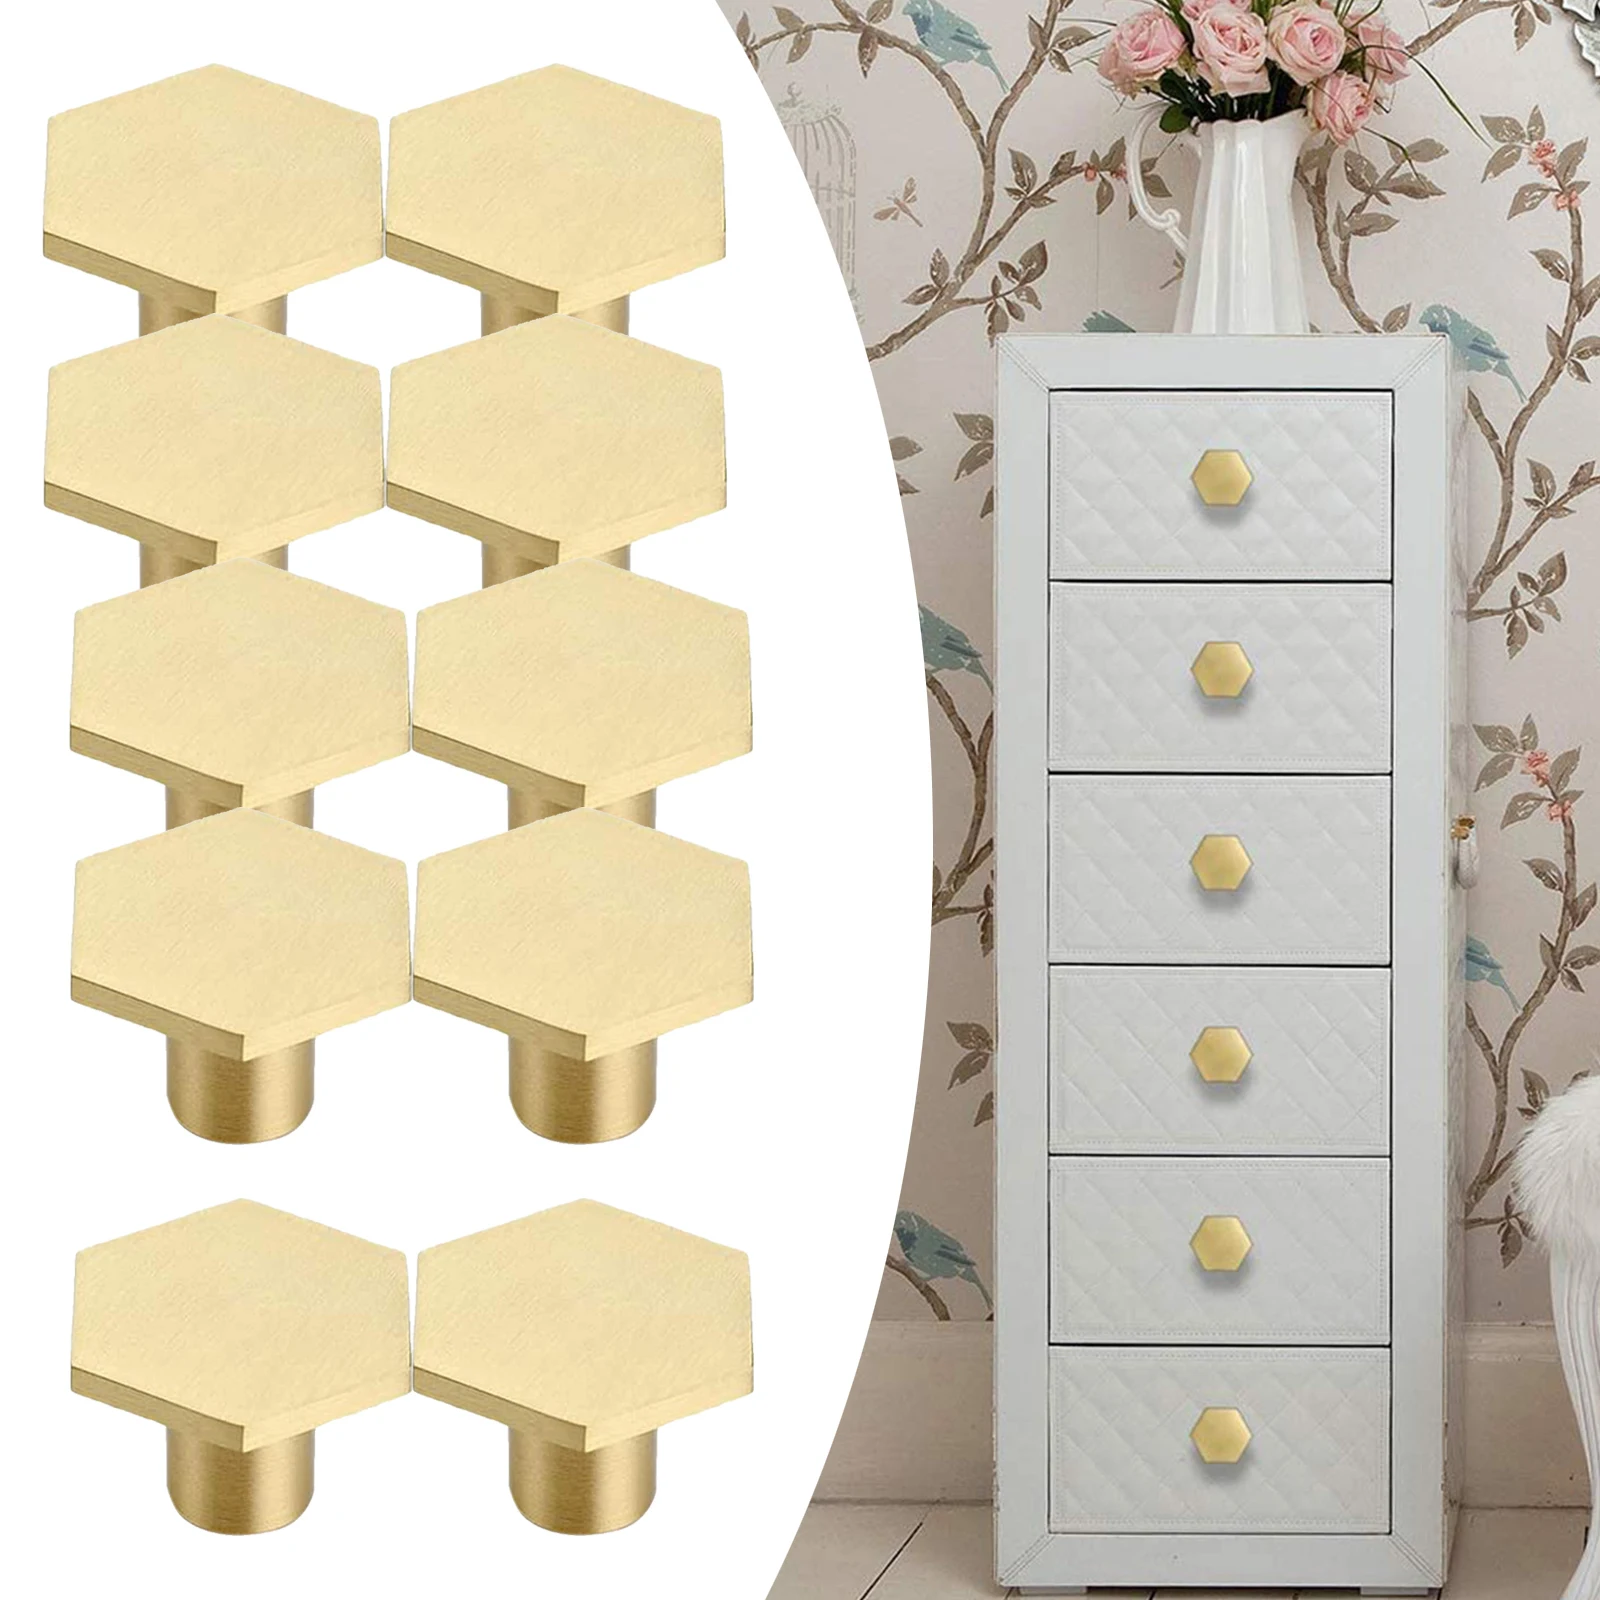 Brass Furniture Round Handle Of Drawer Wardrobe Door Knob Handles Dresser Brass Pulls Cabinet Handles Set of 10pcs